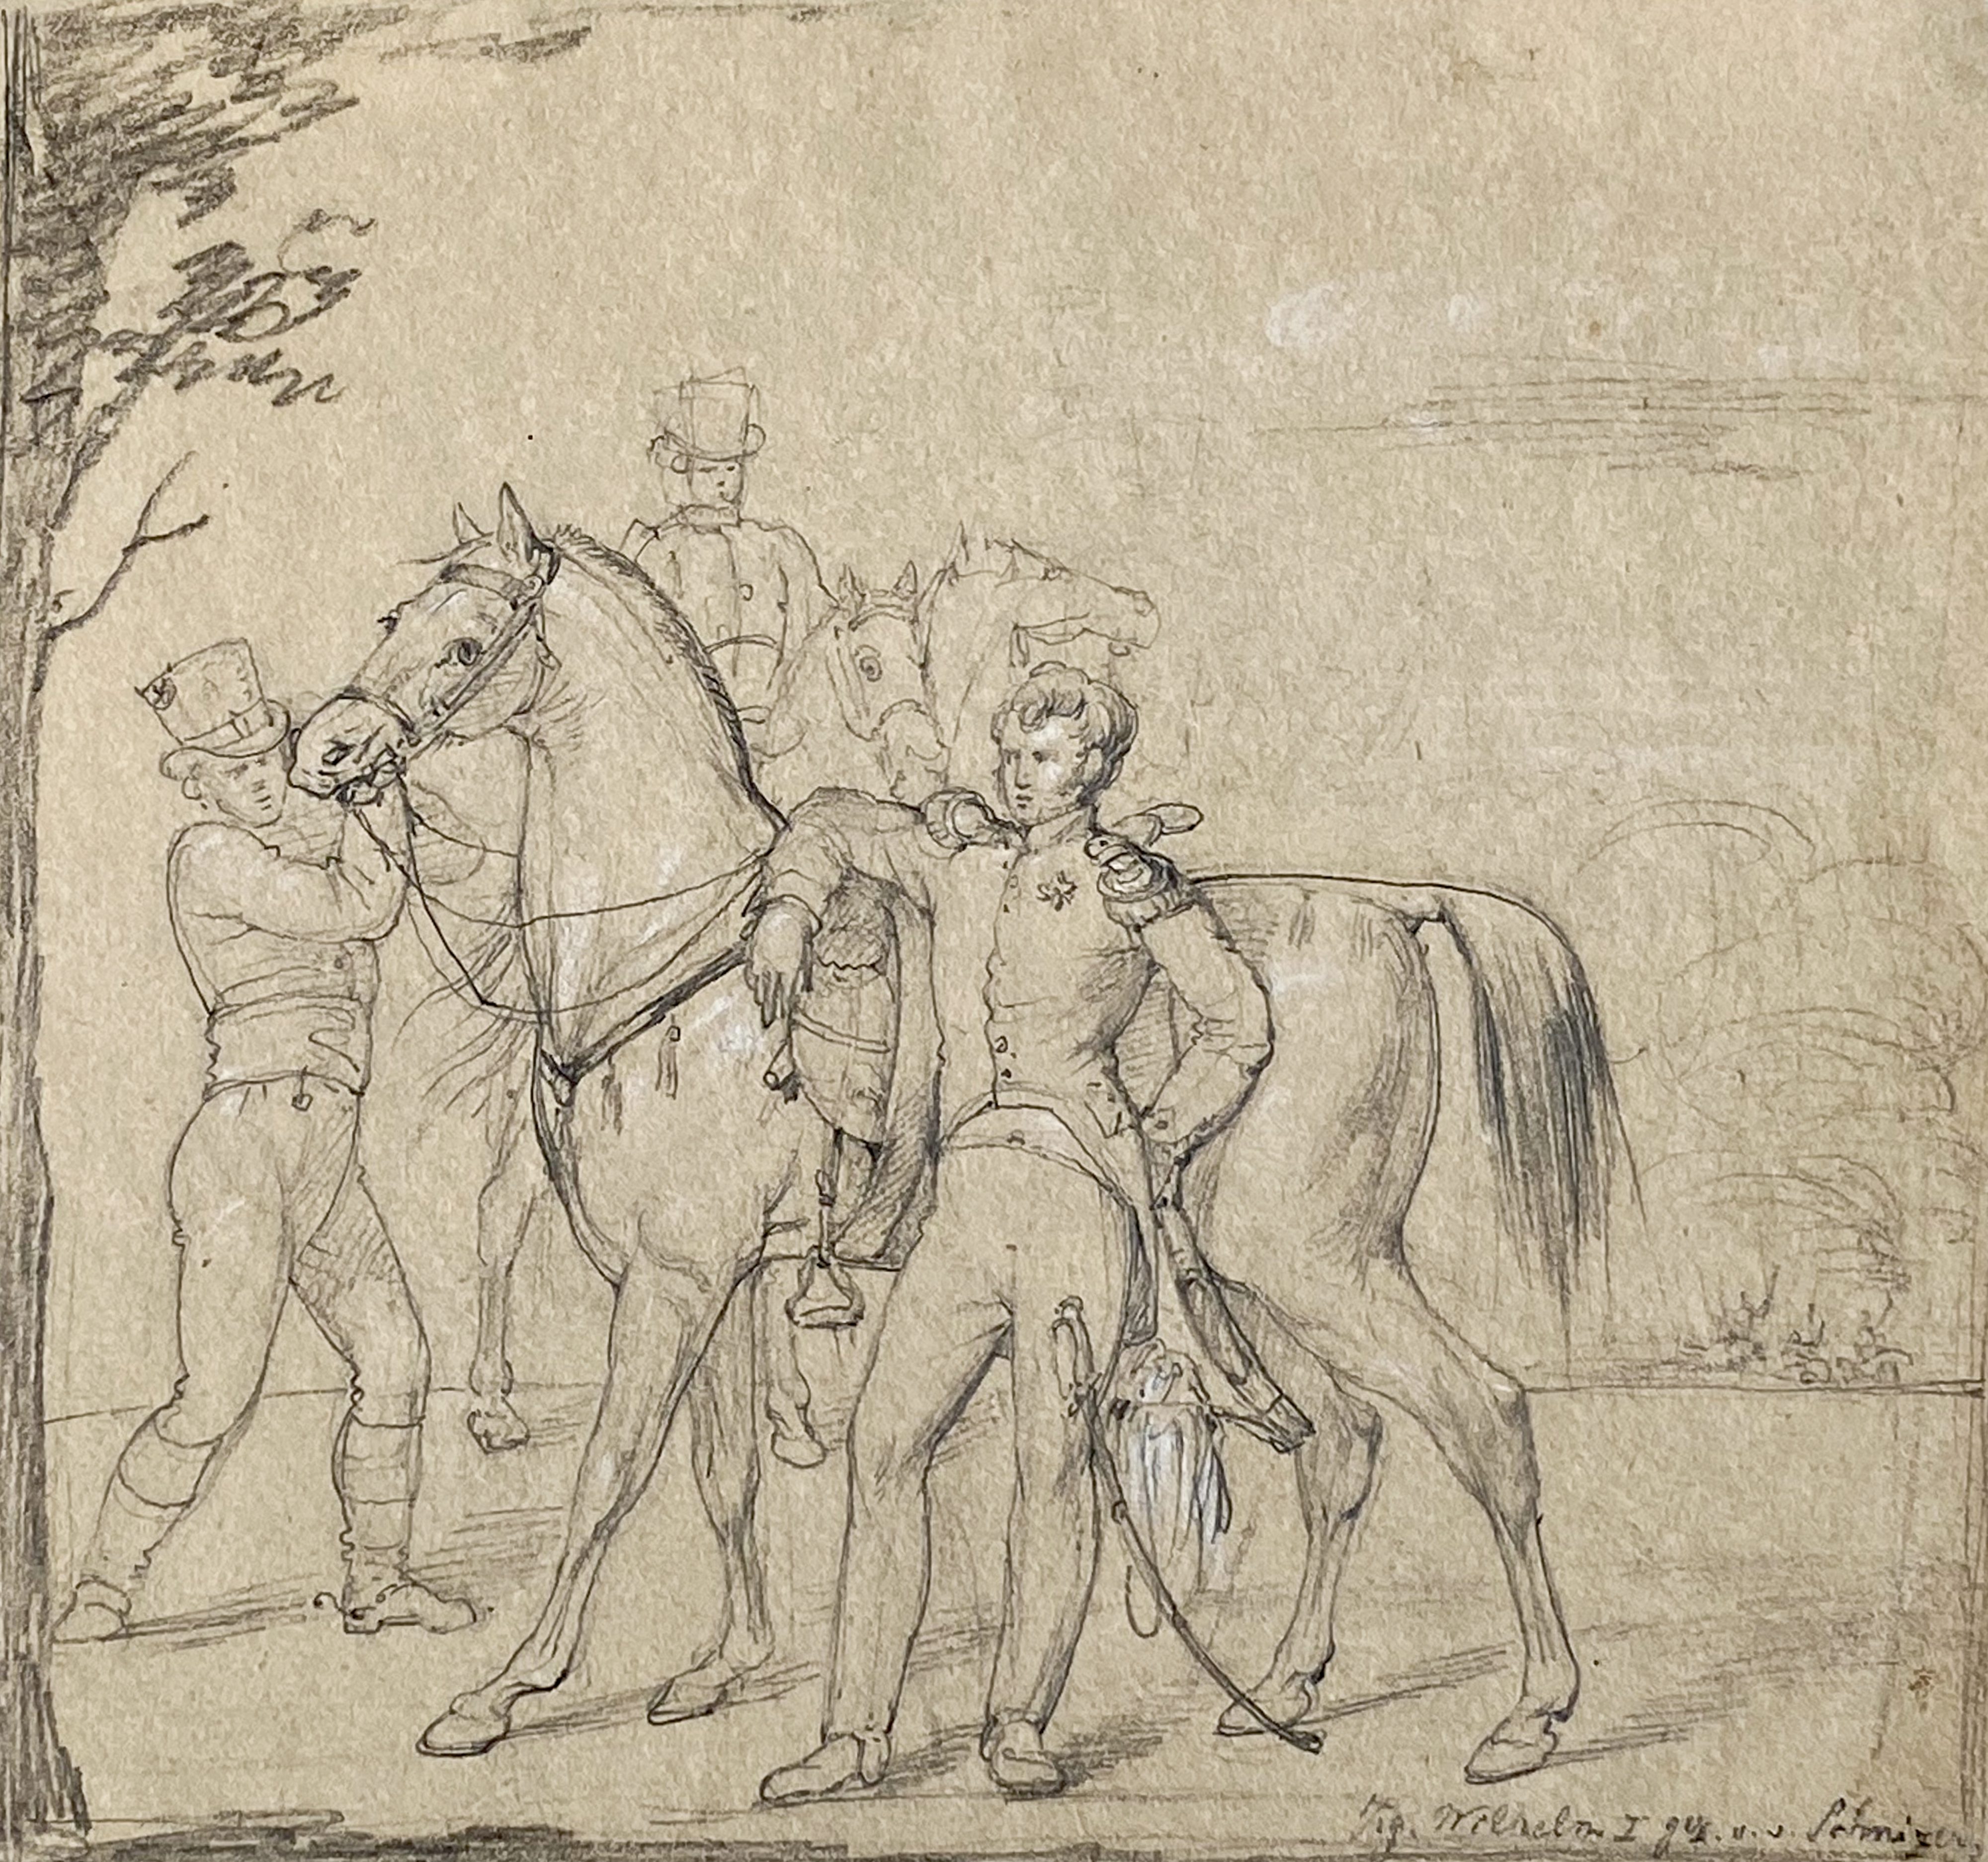 Wilhelm in lässigem Umgang mit seinem Leibreitpferd